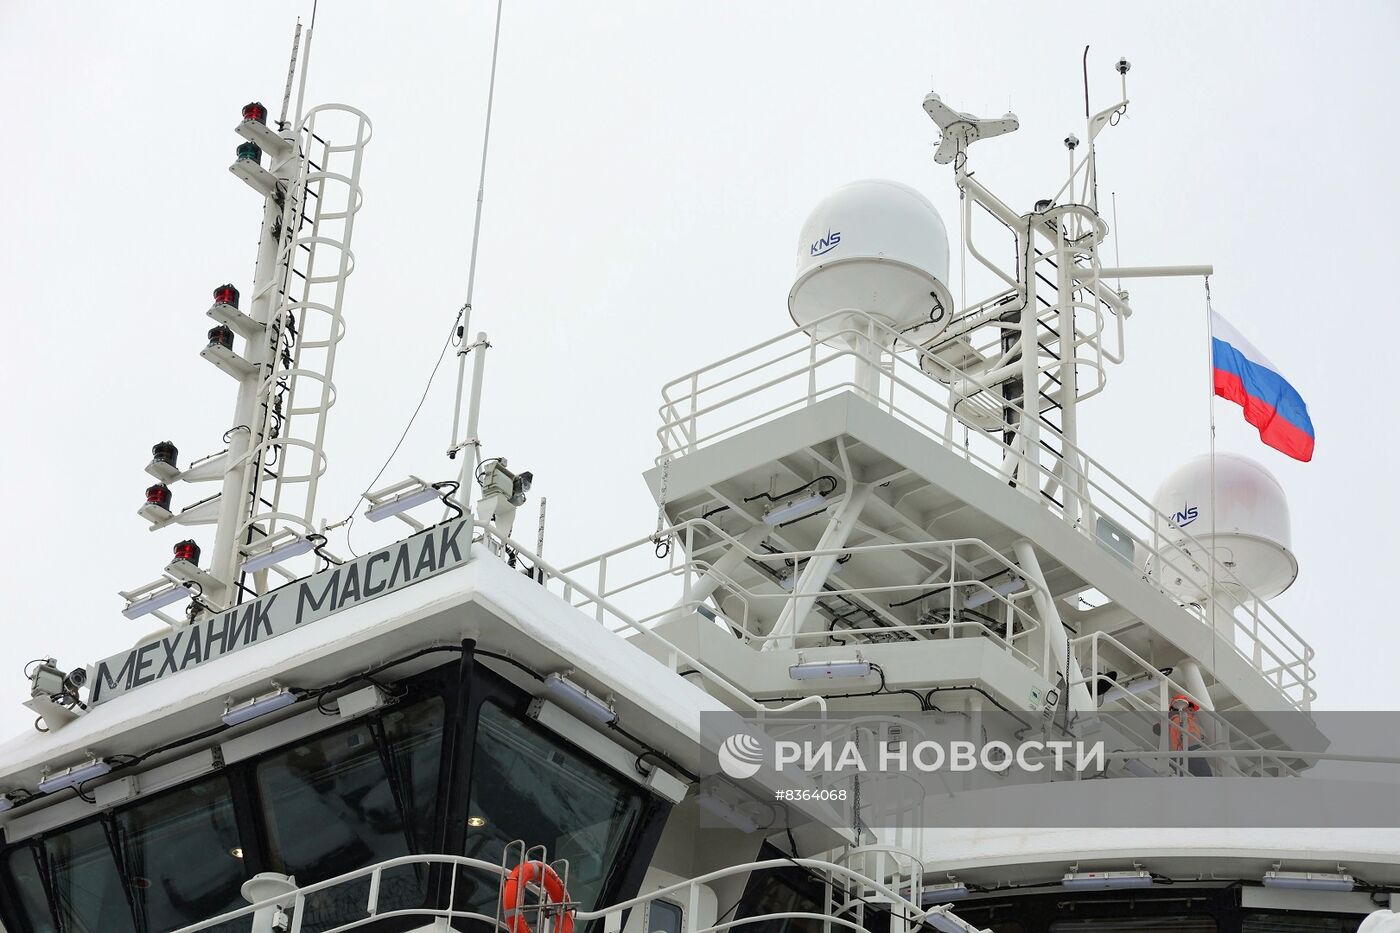 Государственный флаг РФ поднят на рыболовном траулере "Механик Маслак"